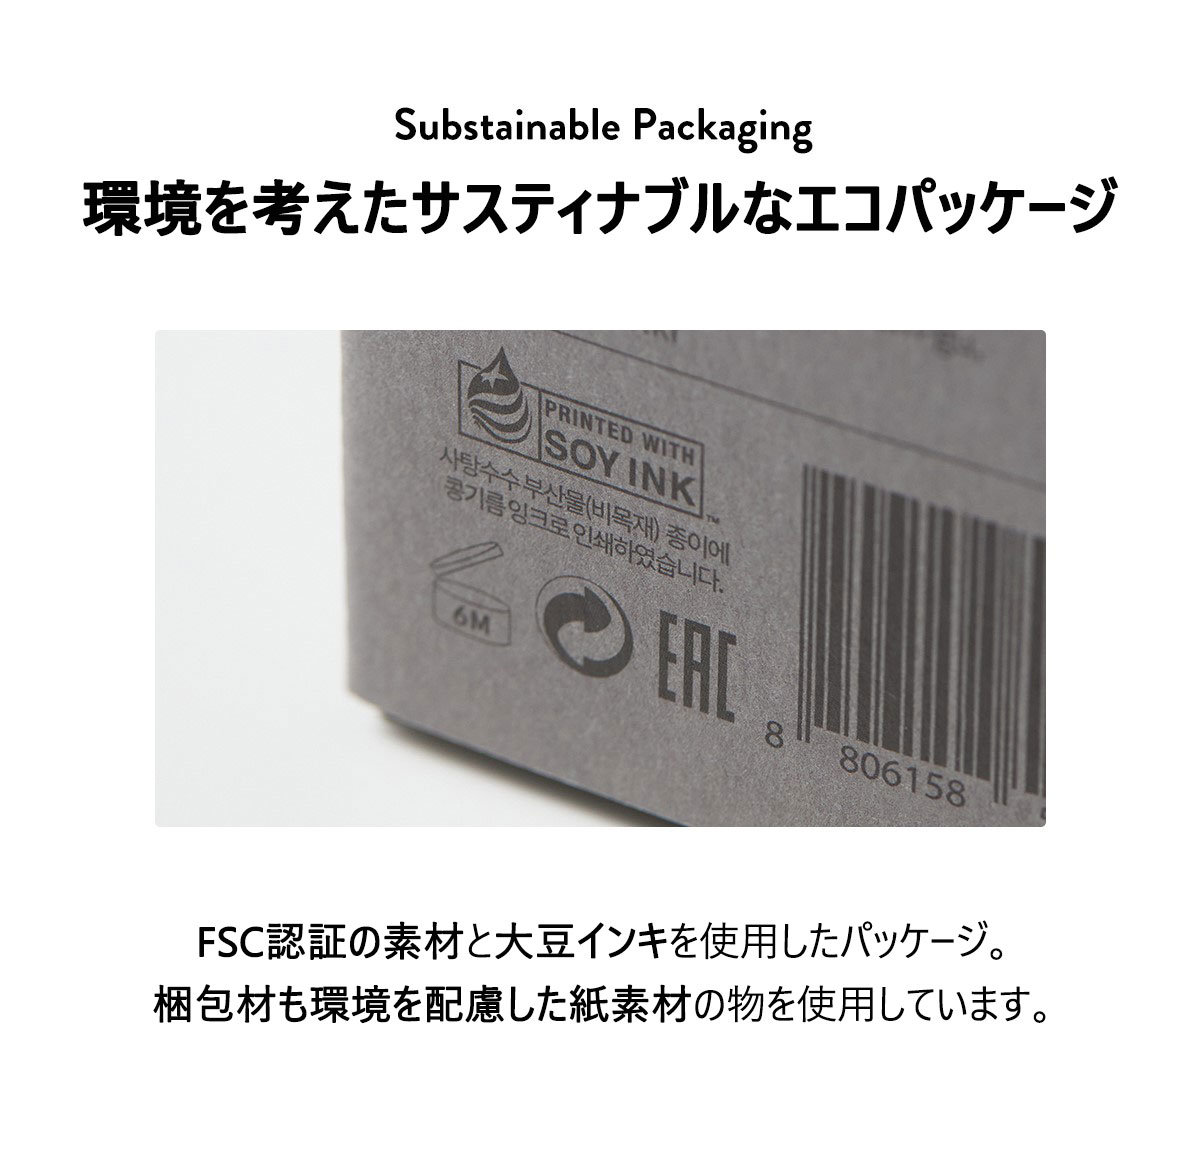 環境を考えたサスティナブルなエコパッケージFSC認証の素材と大豆インキを使用したパッケージ。
梱包材も環境を配慮した紙素材の物を使用しています。